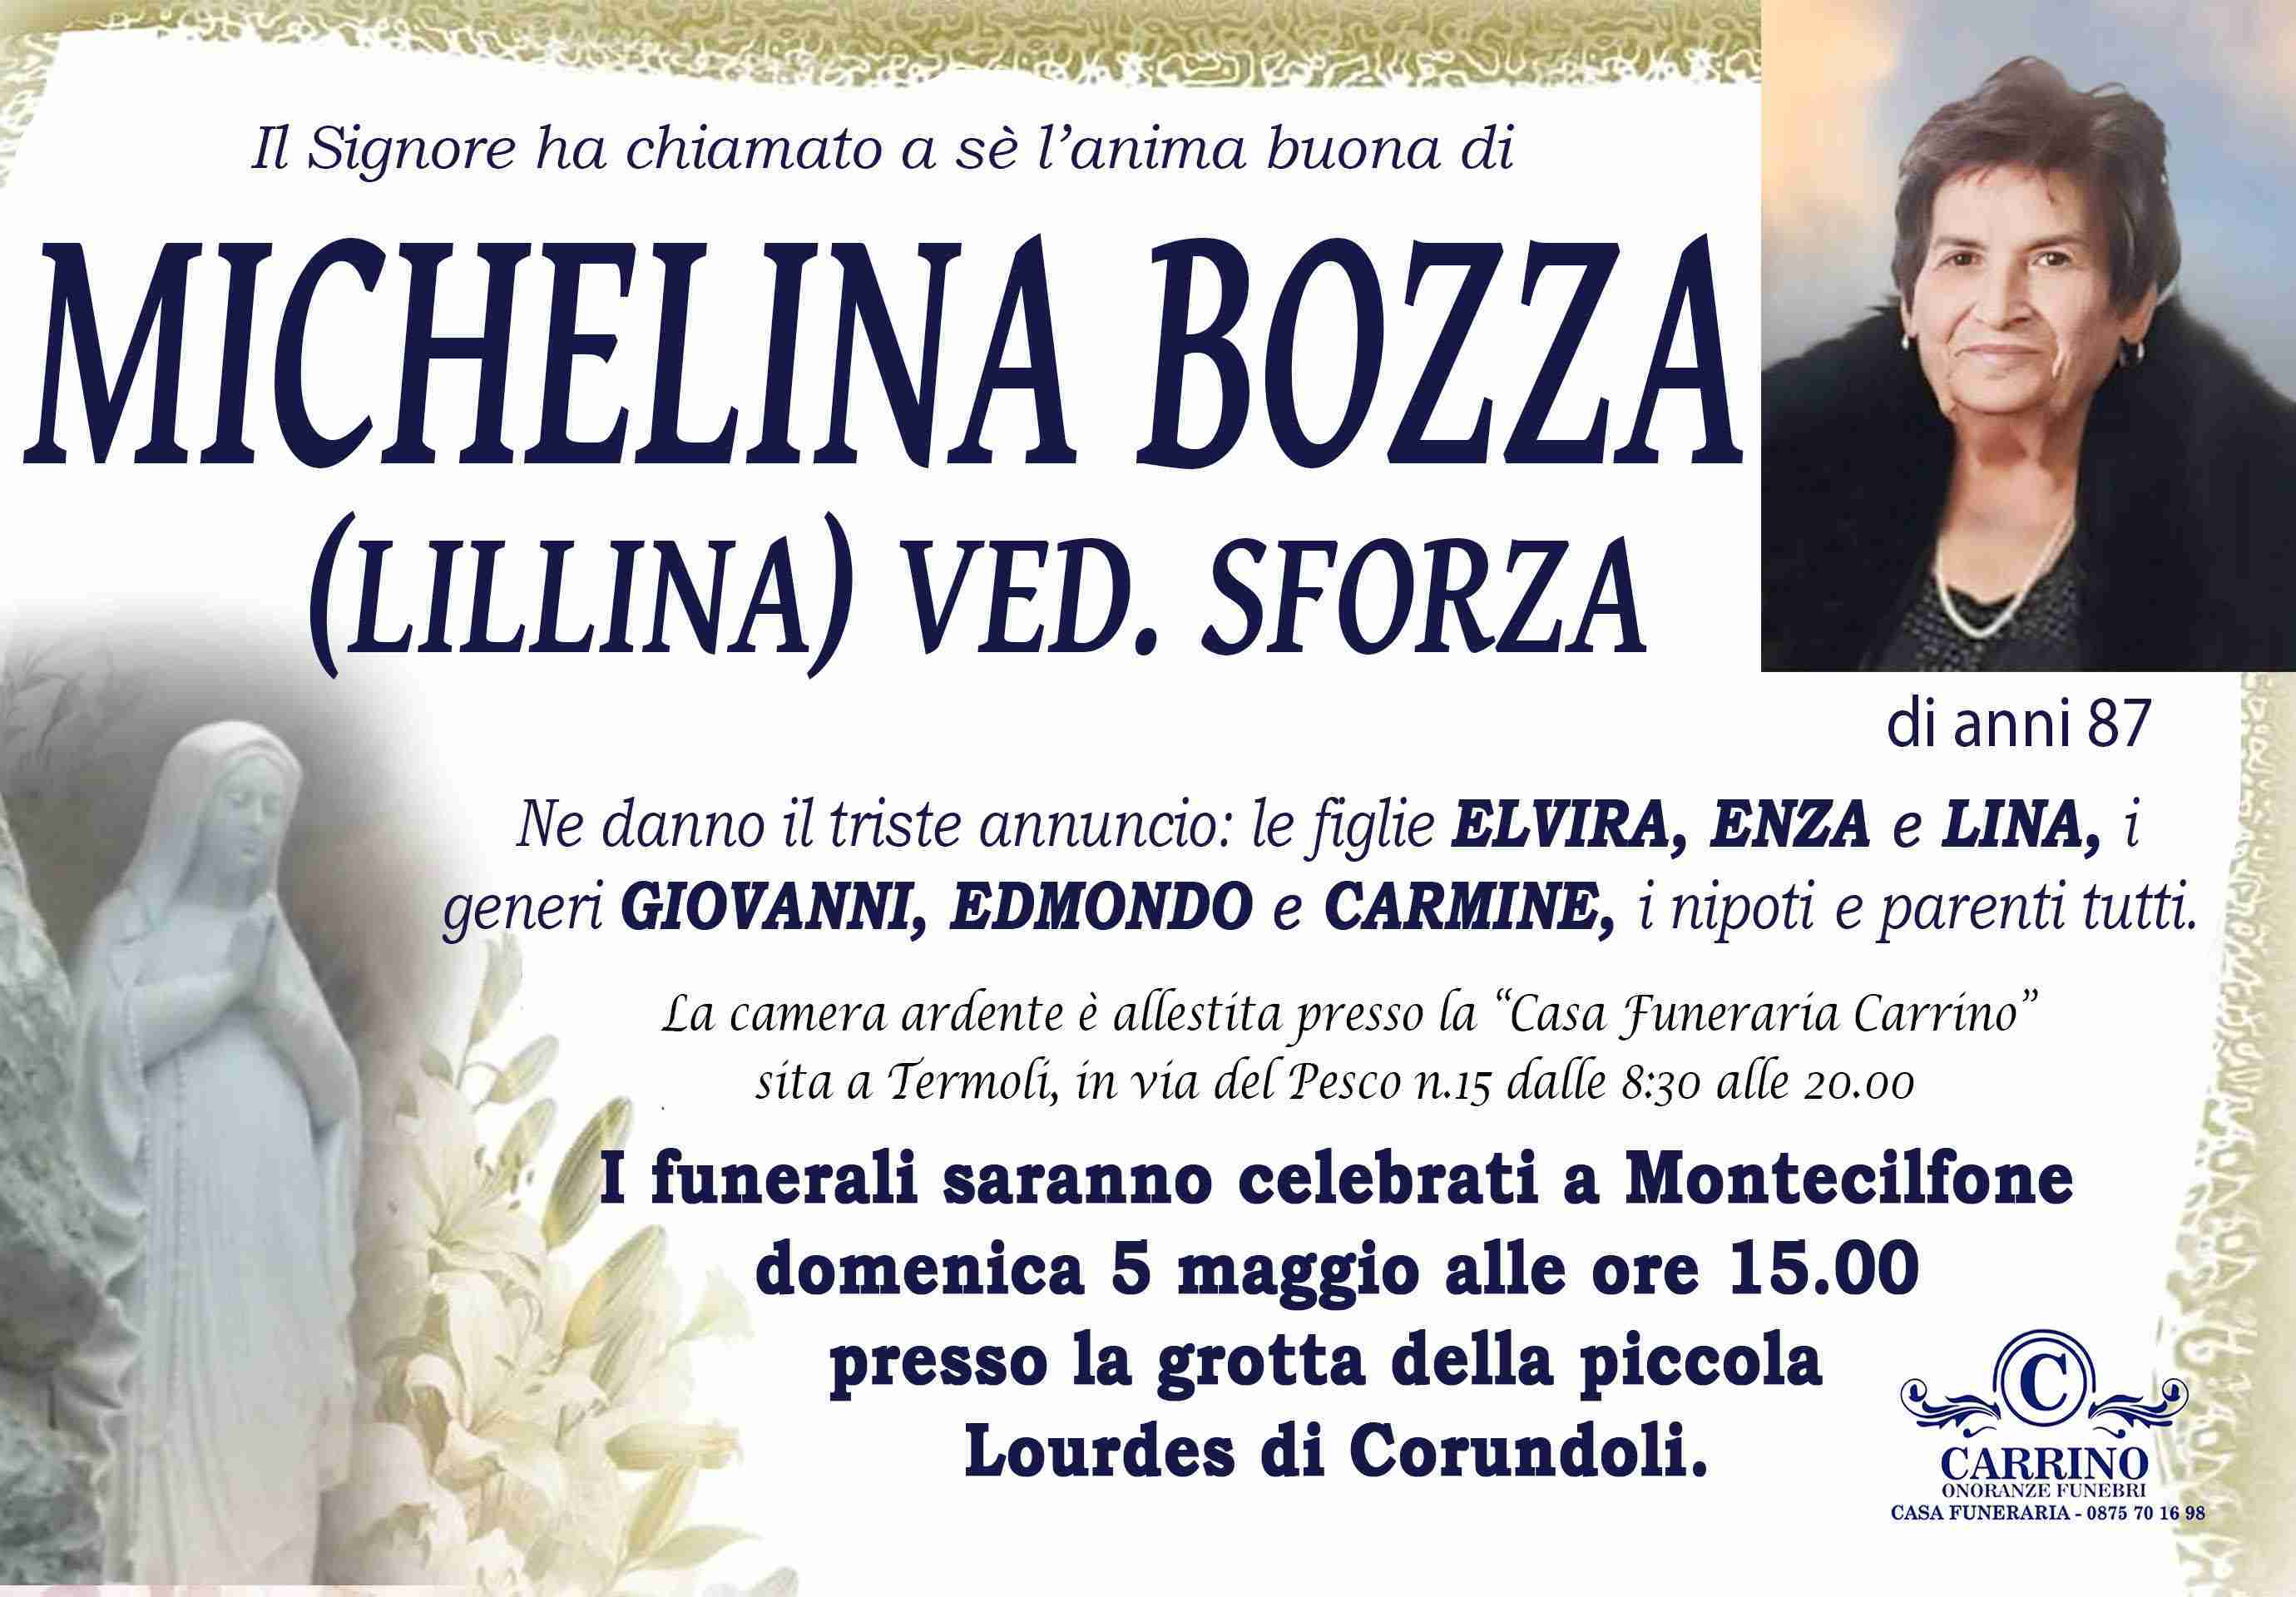 Michelina Bozza ved. Sforza